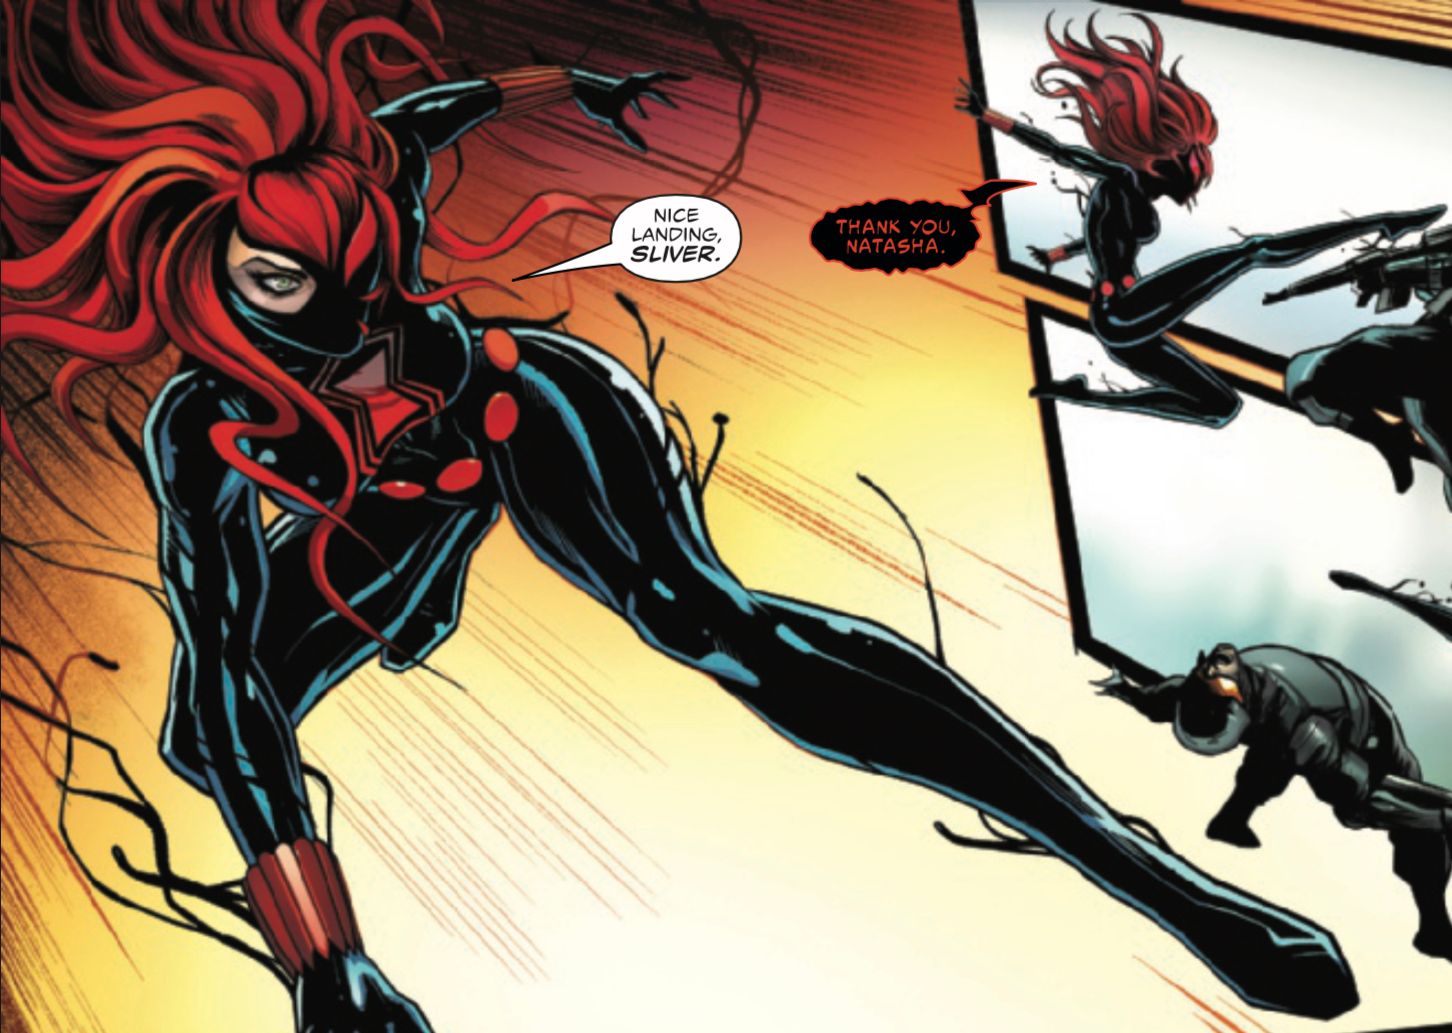 Viúva Negra: Venomous #1, o Simbionte Fractius é oficialmente nomeado por Viúva Negra.